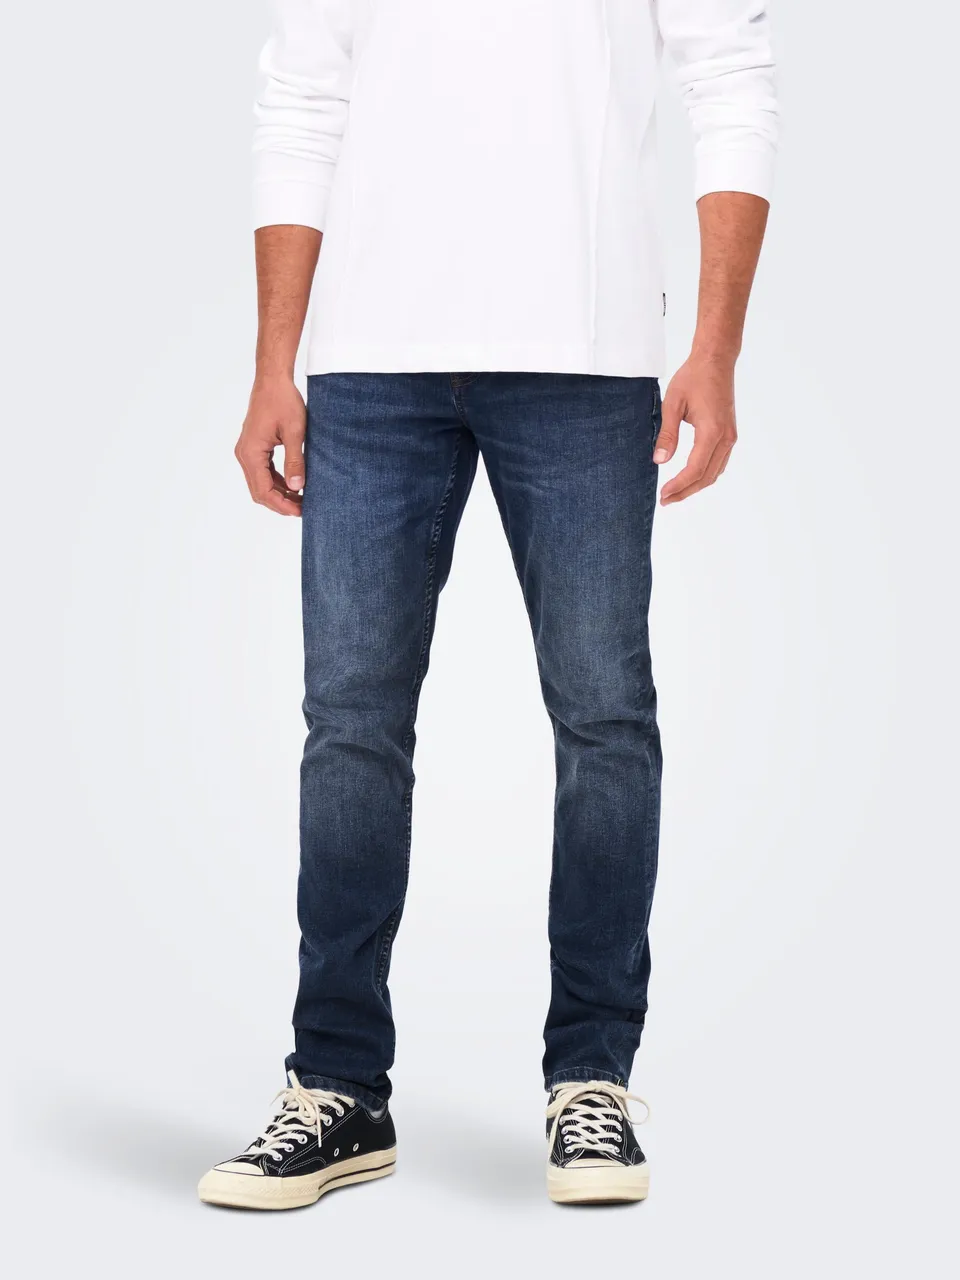 Only & Sons Onsloom slim dark blue 3030 jeans n